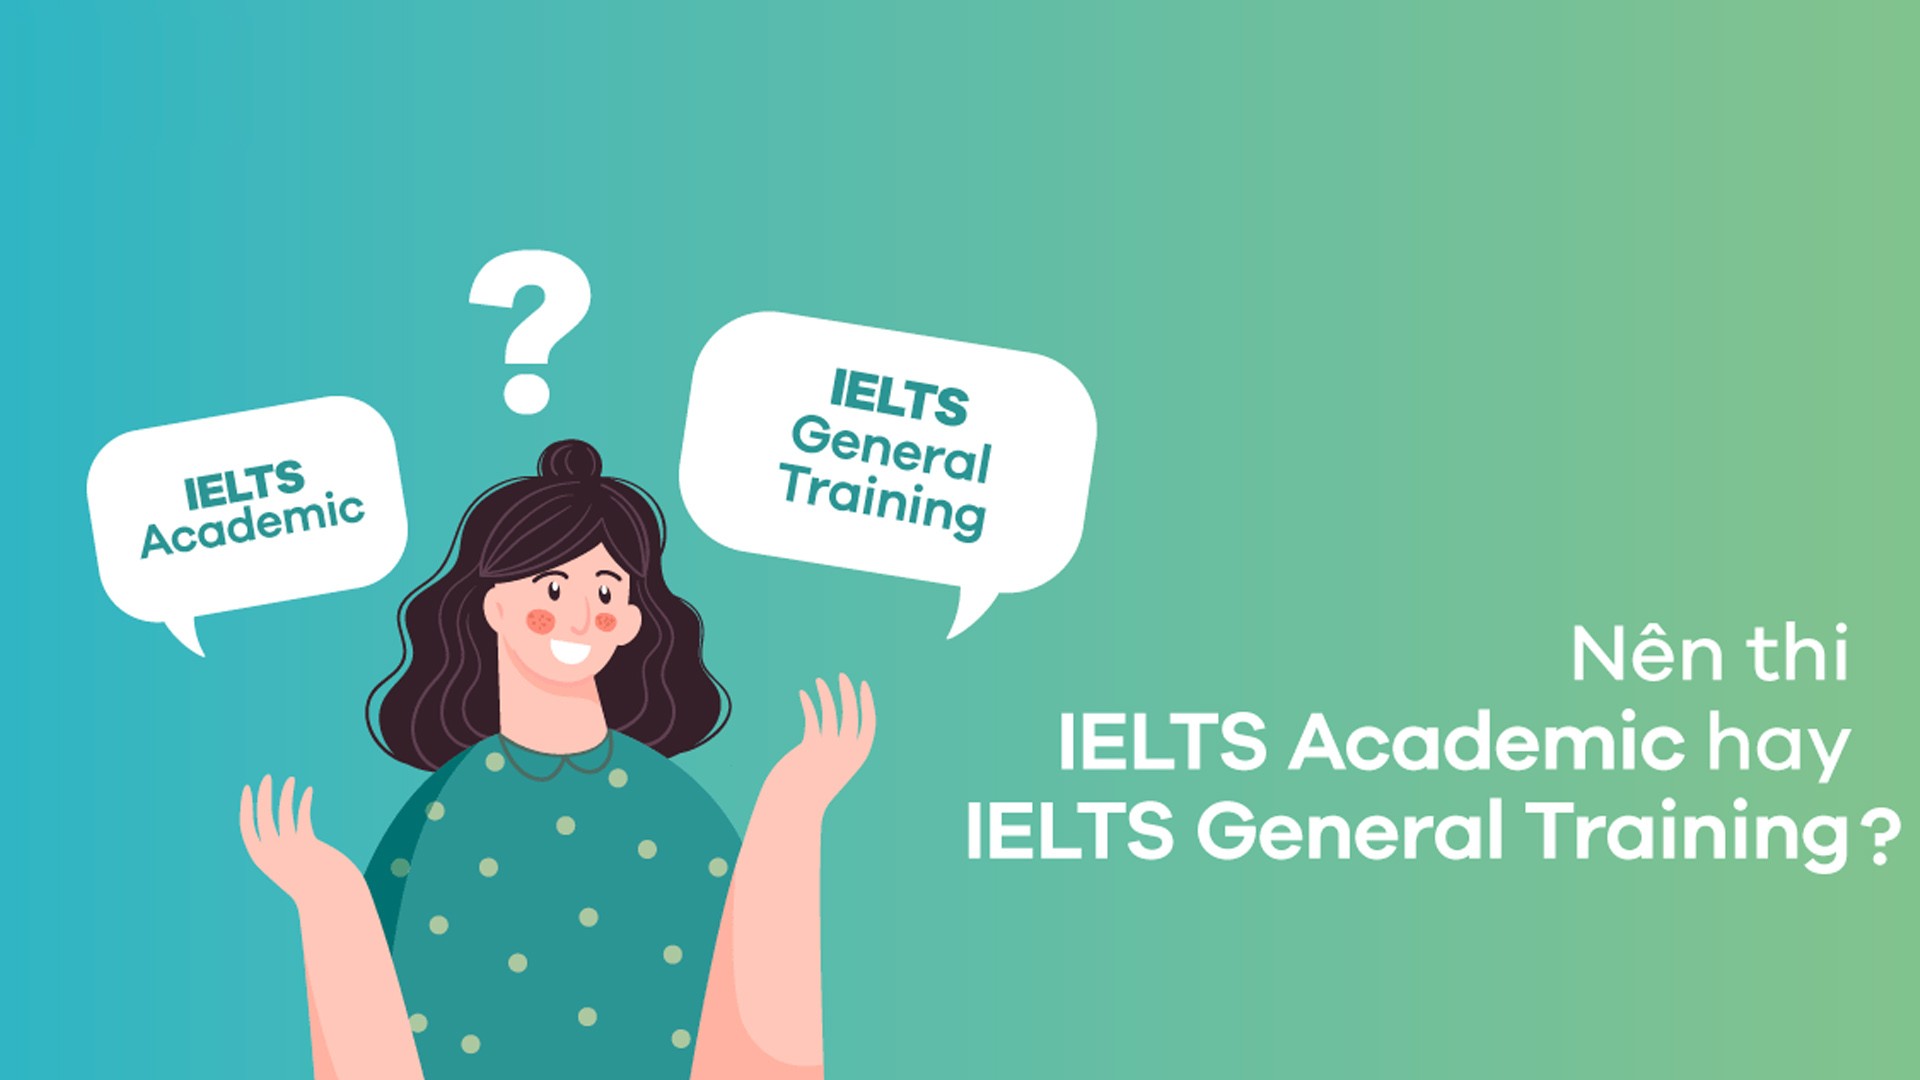 IELTS Academic và IELTS General khác nhau thế nào?